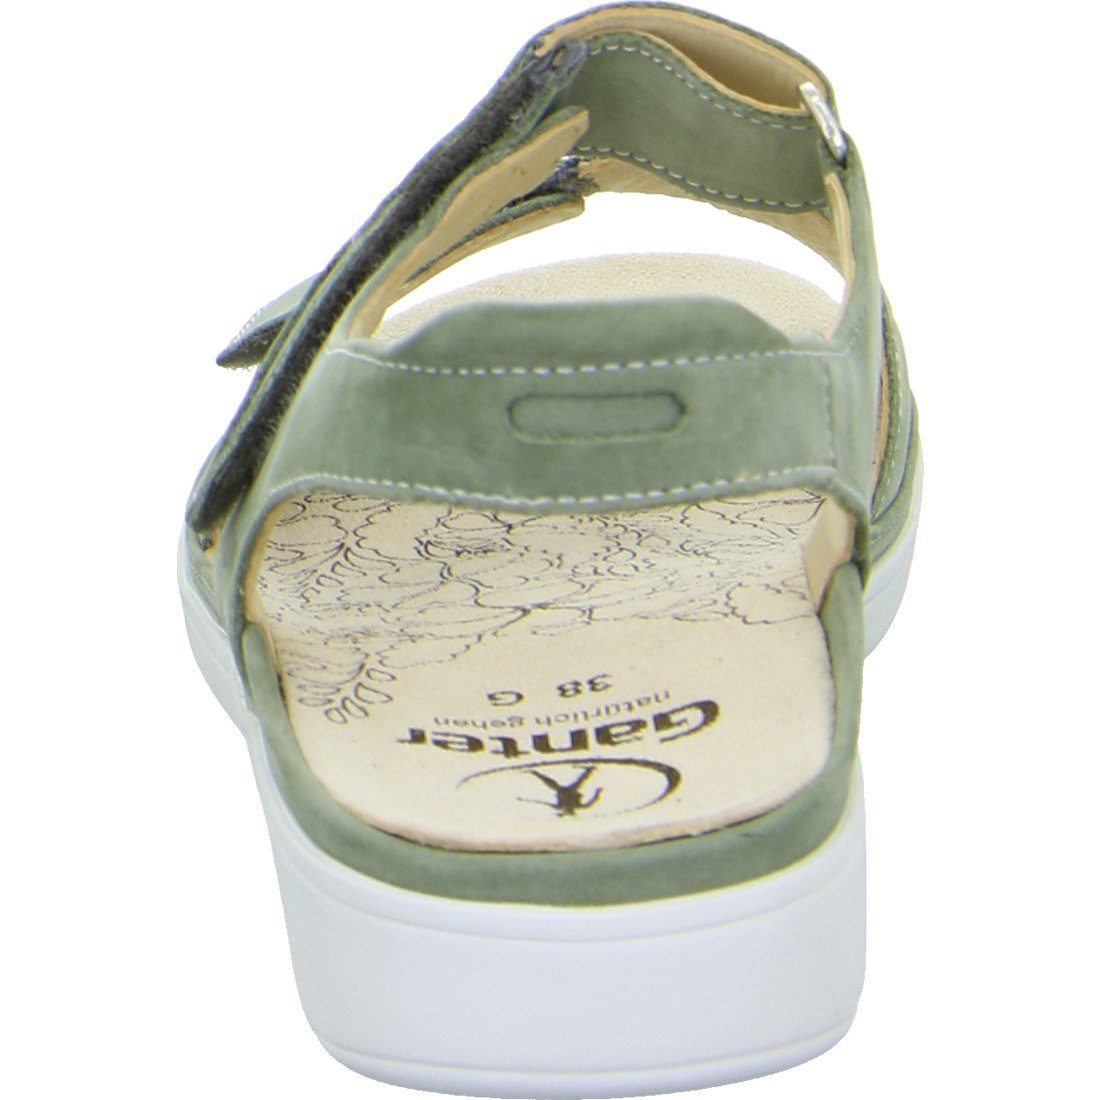 Ganter Ganter Schuhe, Sandalette - Nubuk grün Damen Gina Sandalette 048812